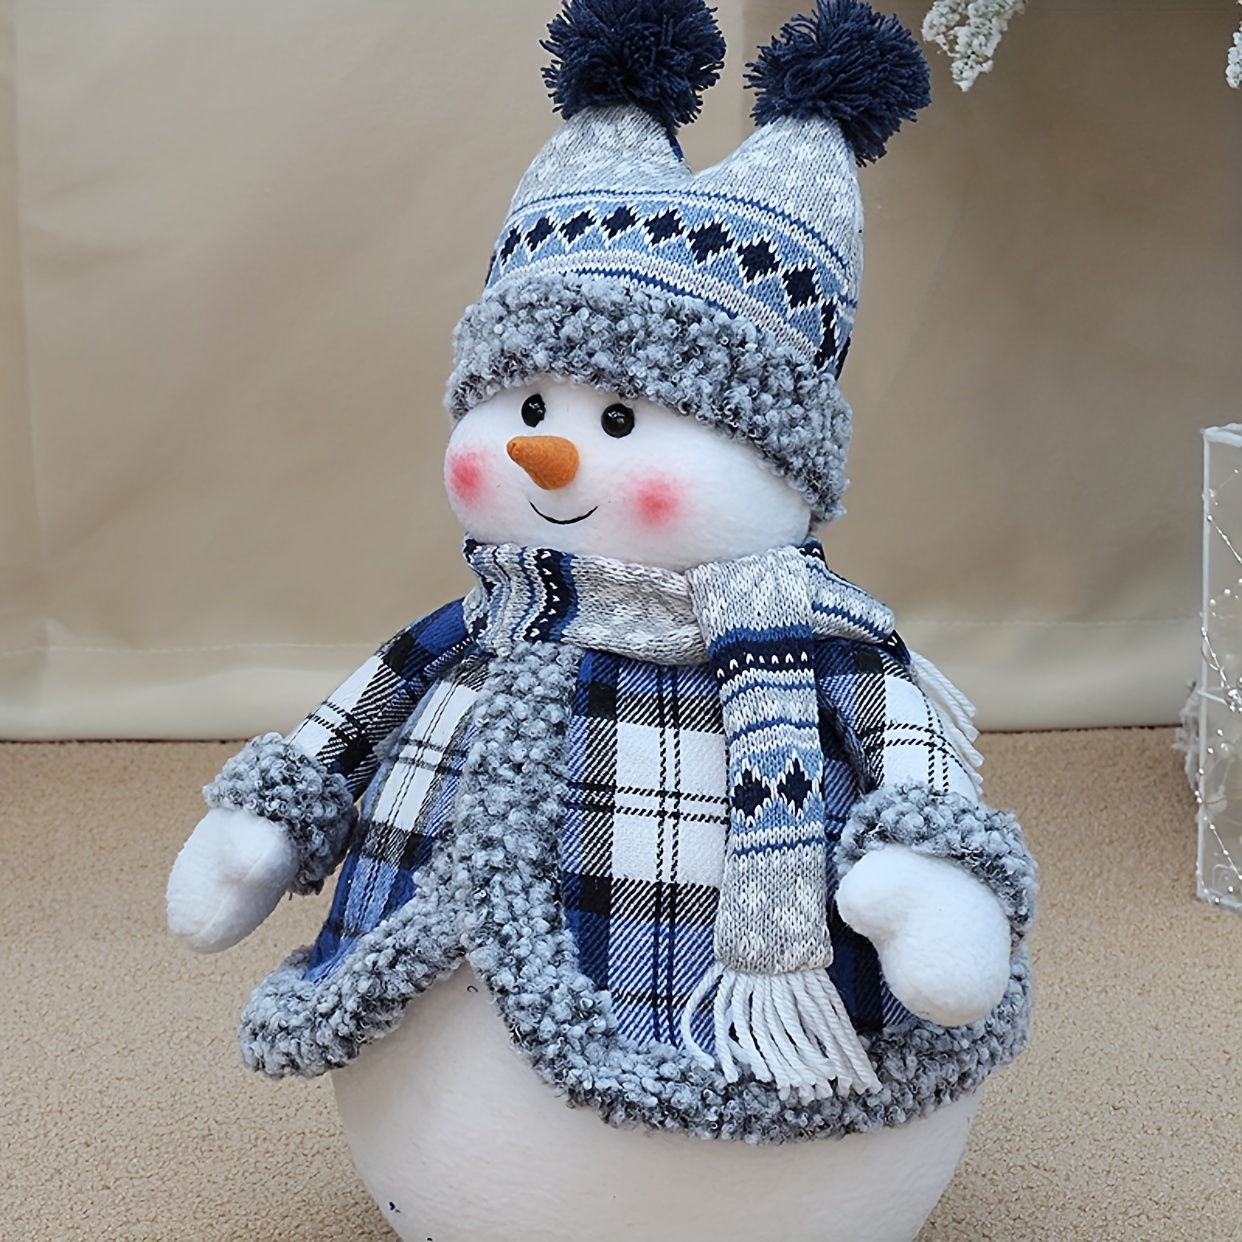 1pc クリスマスデコレーション ブルーの生地の雪だるま人形 ウィンドウ